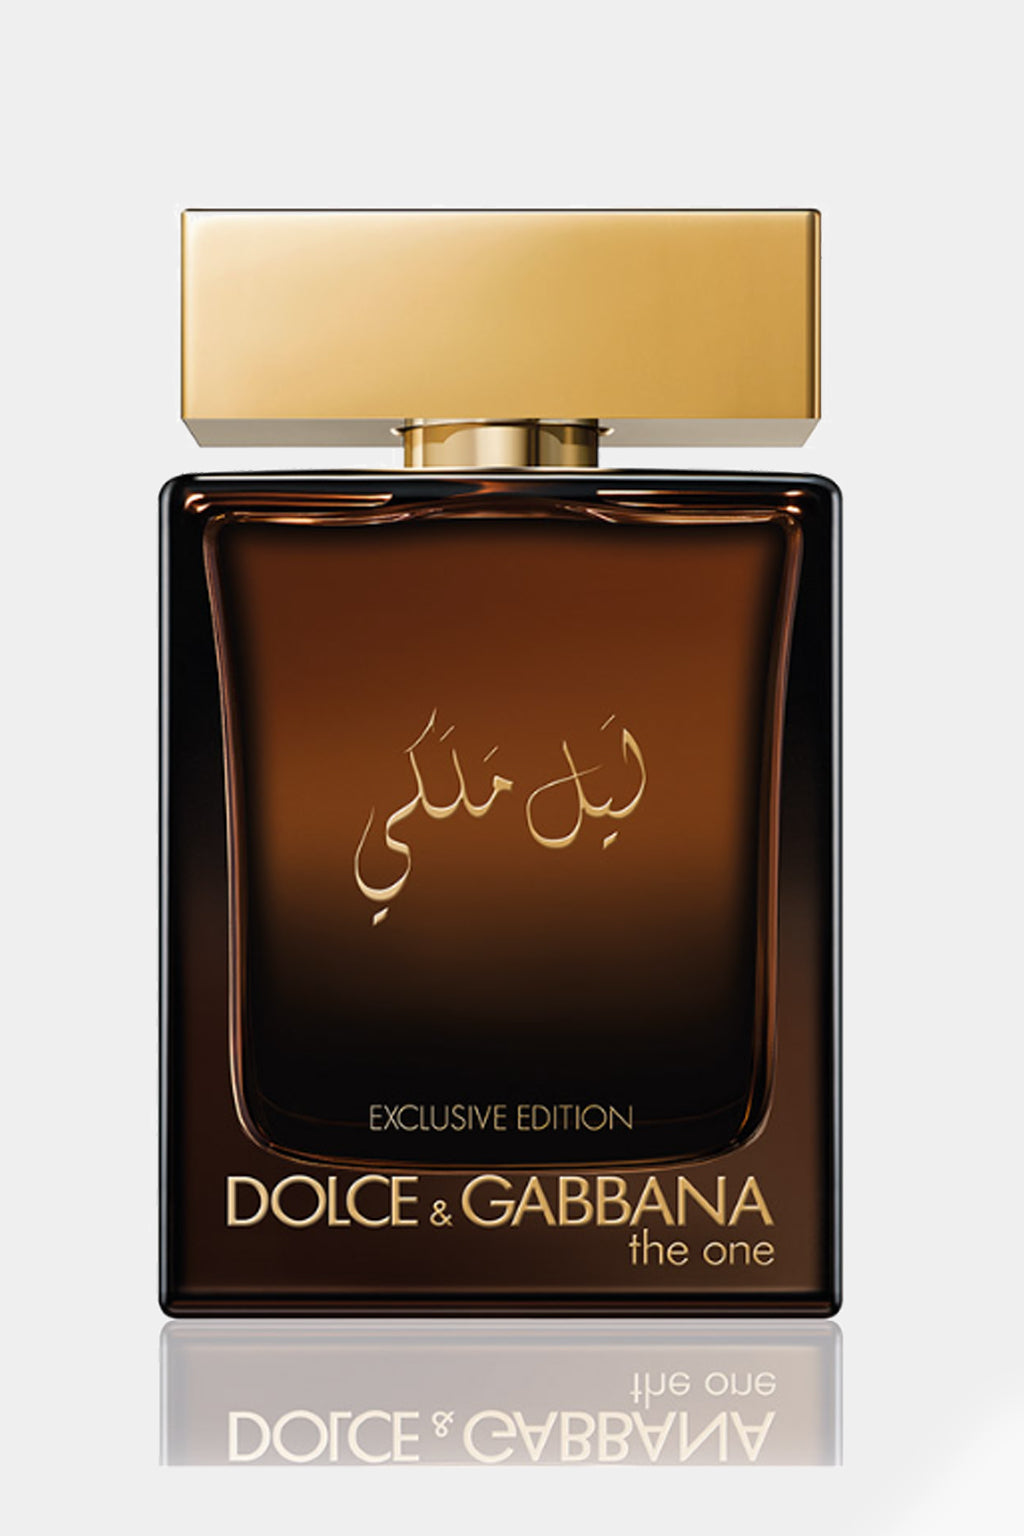 Dolce & Gabbana - The One Exclusive Edition Eau de Parfum